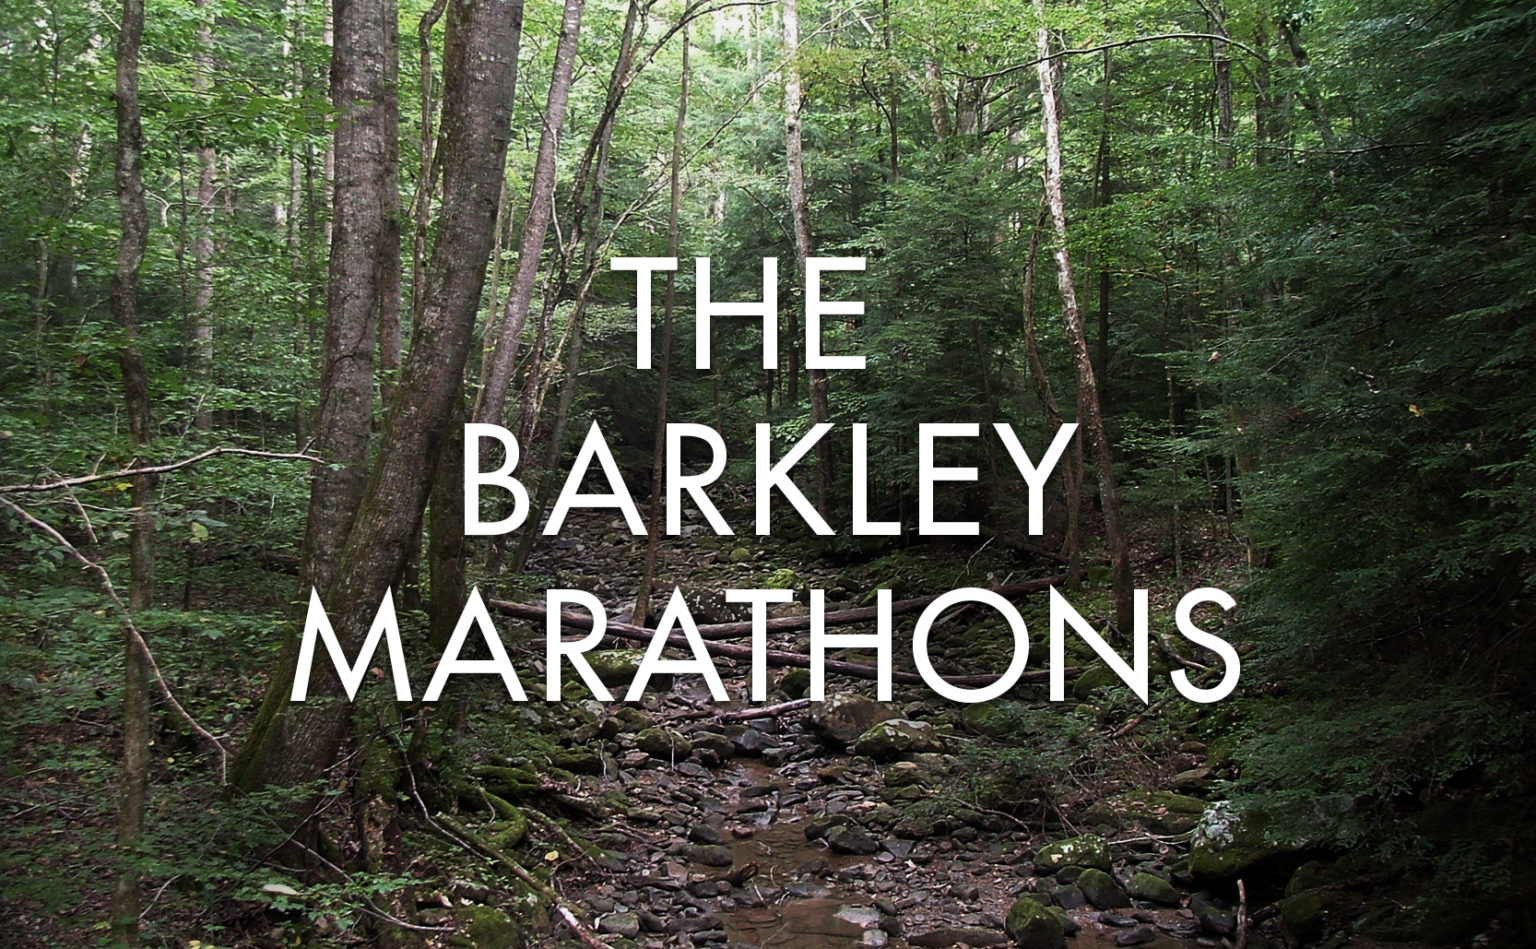 download barkley marathon updates